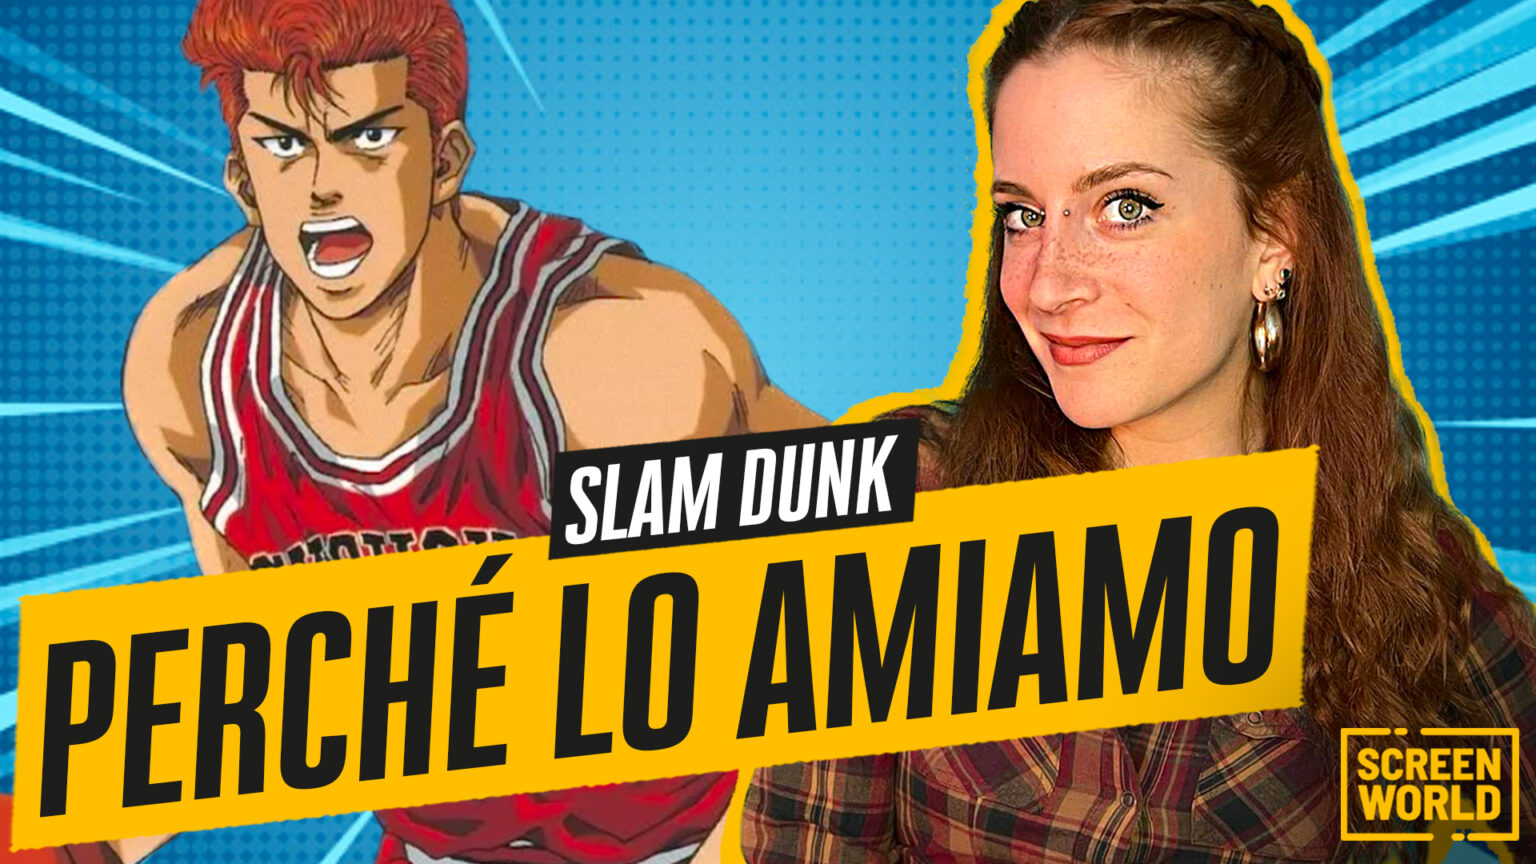 Perché amiamo Slam Dunk